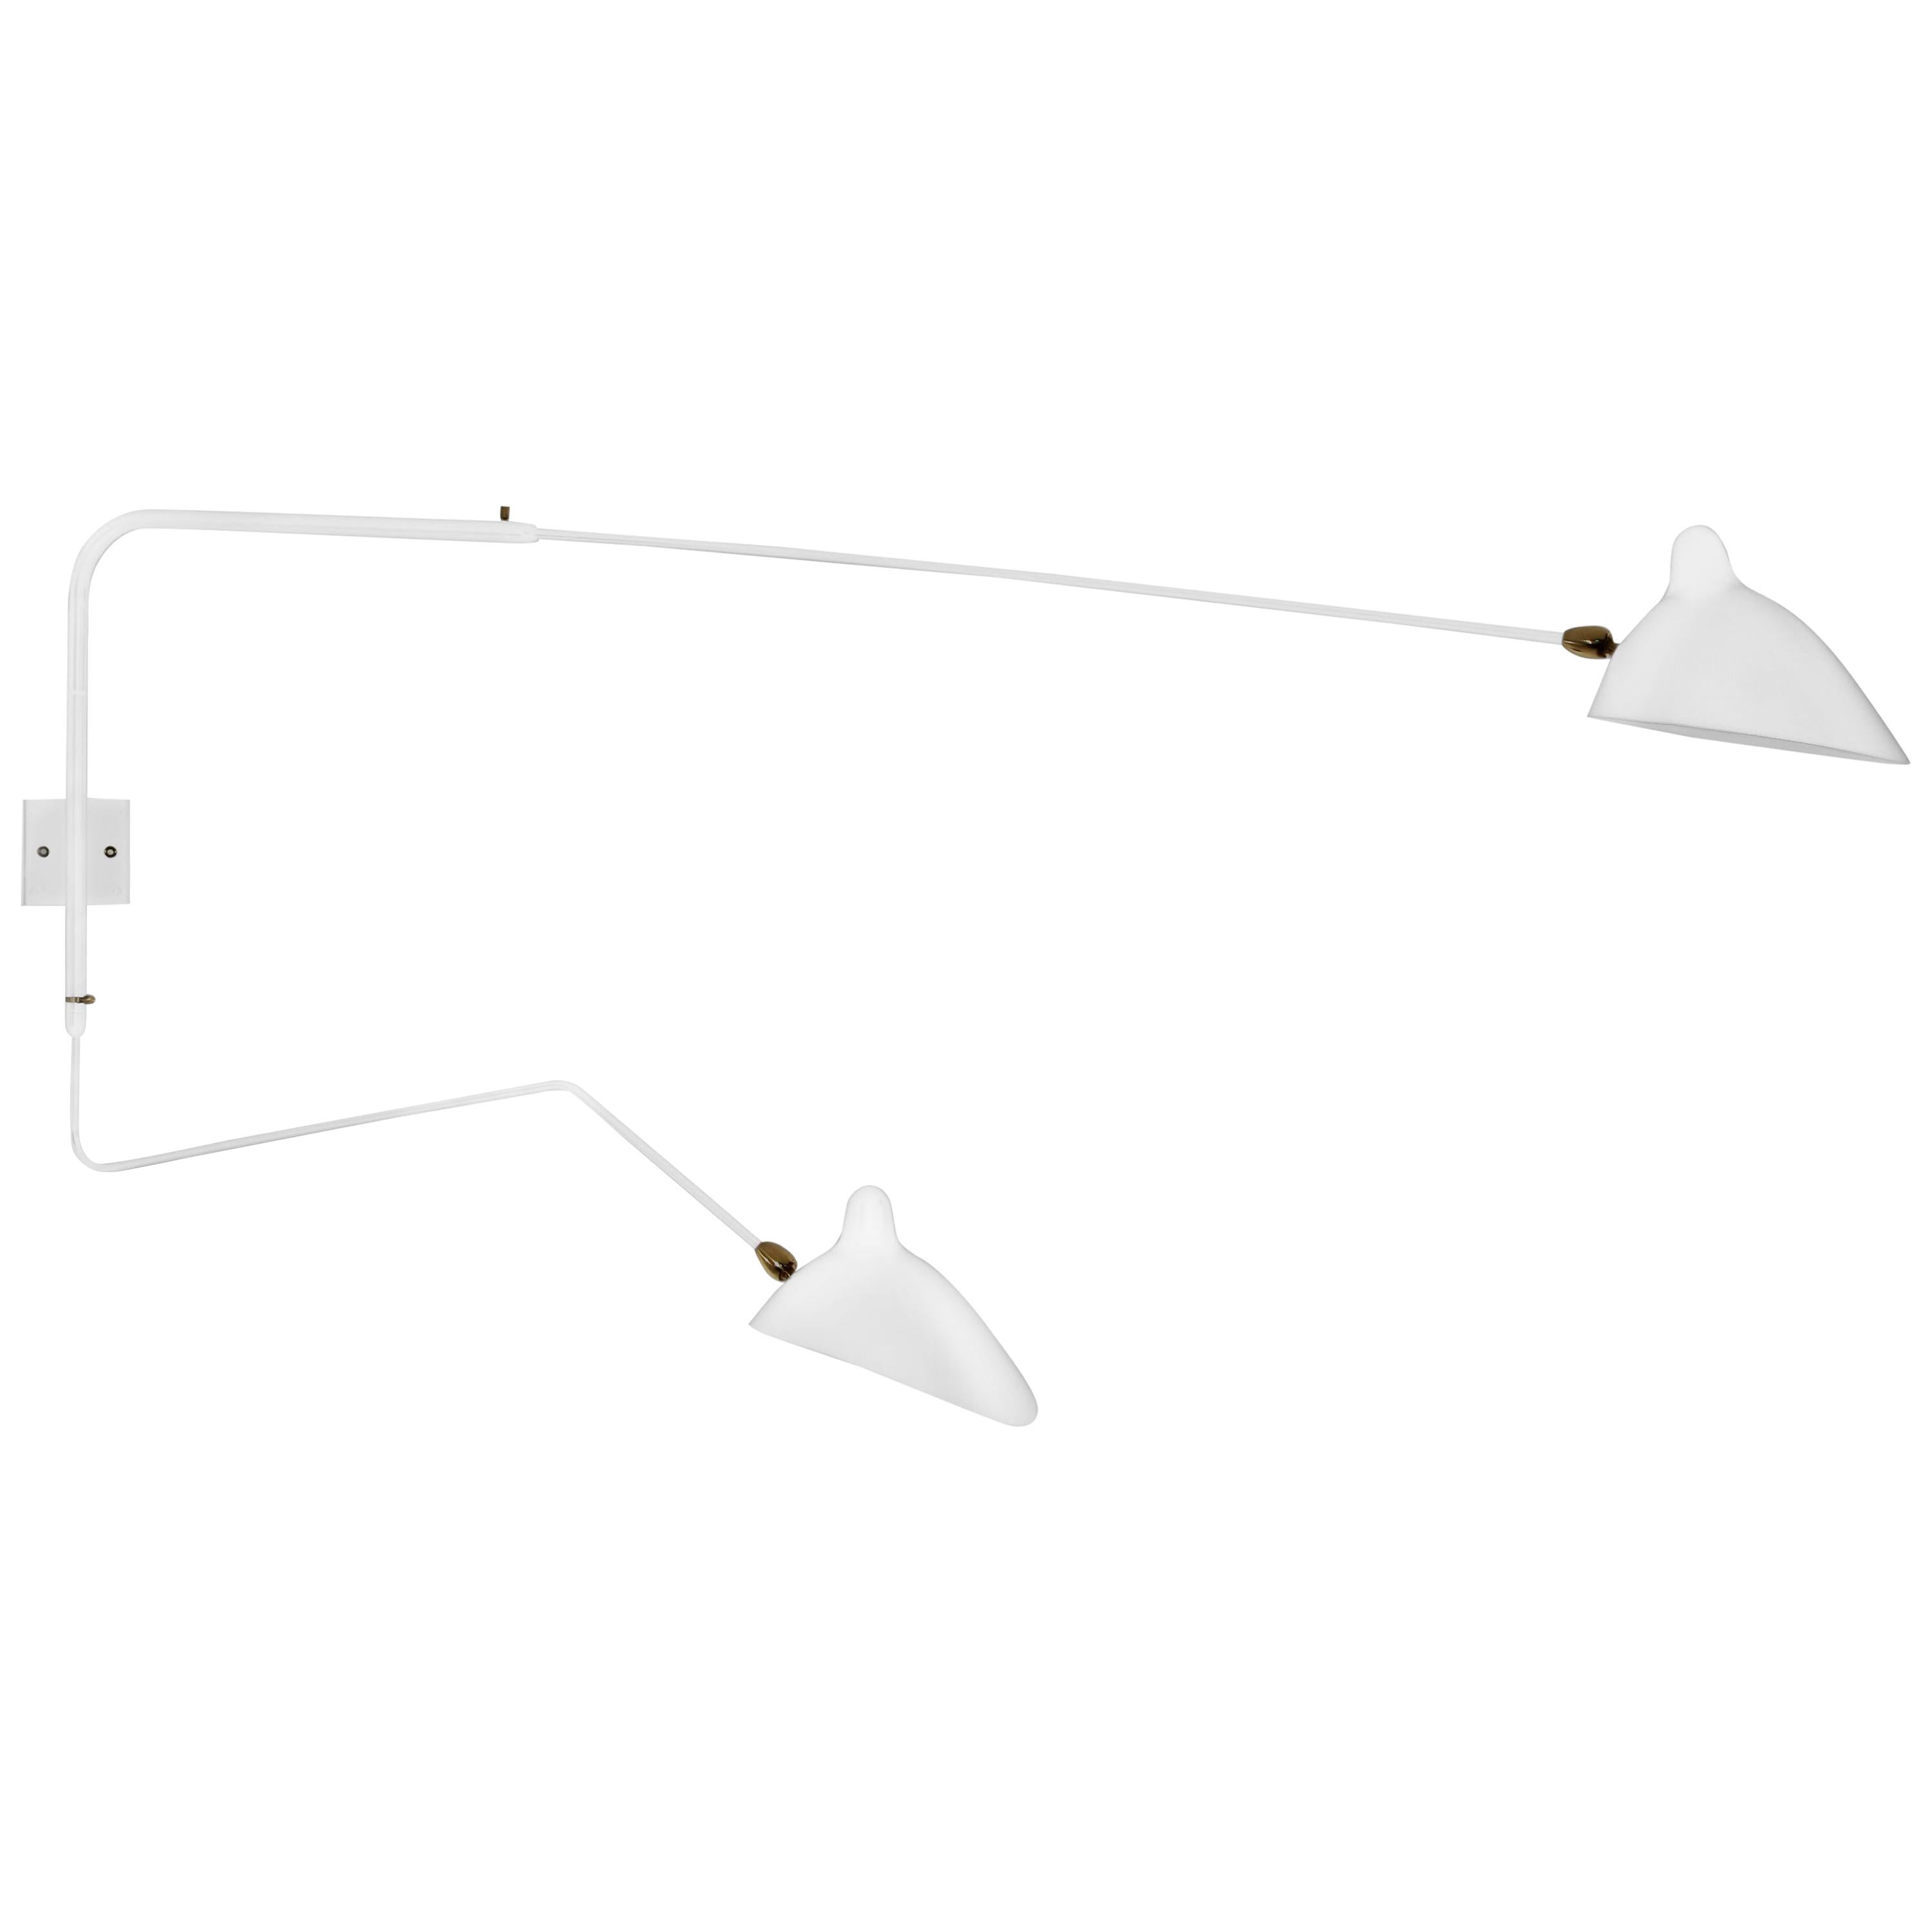 Lampe murale blanche moderne à deux bras rotatifs droits Serge Mouille